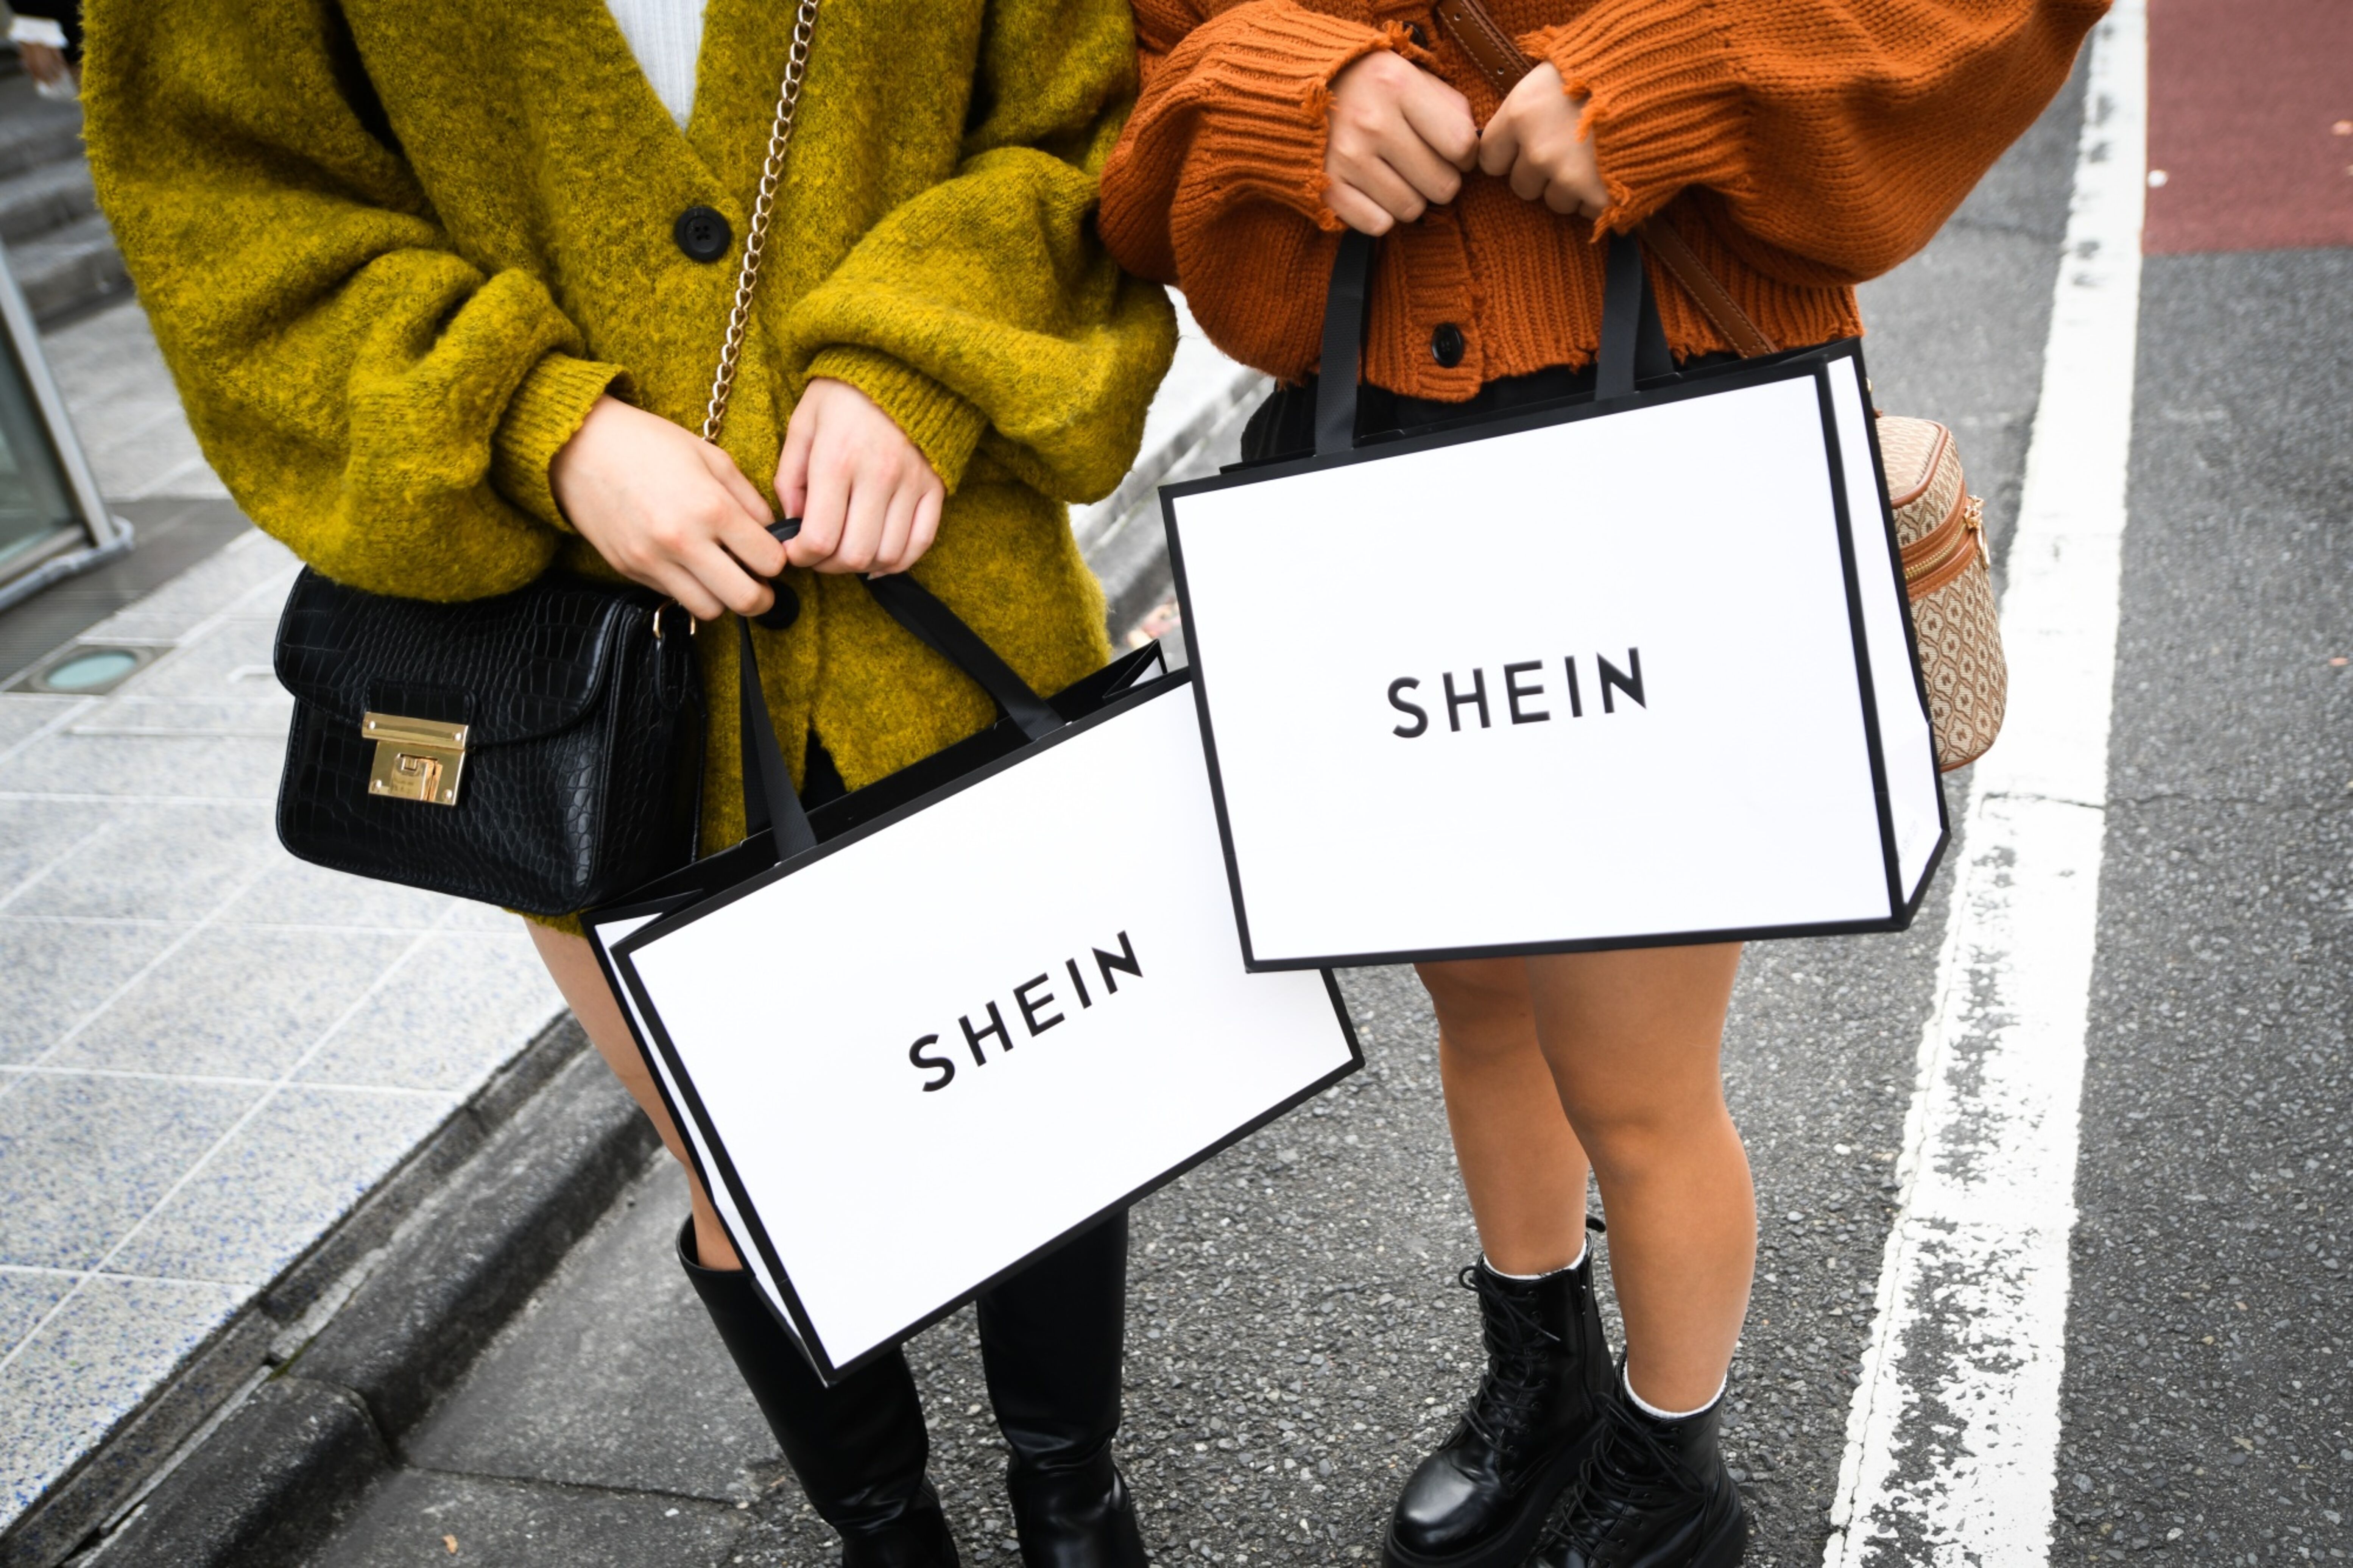 Os problemas legais da Shein, a gigante chinesa da moda que avança